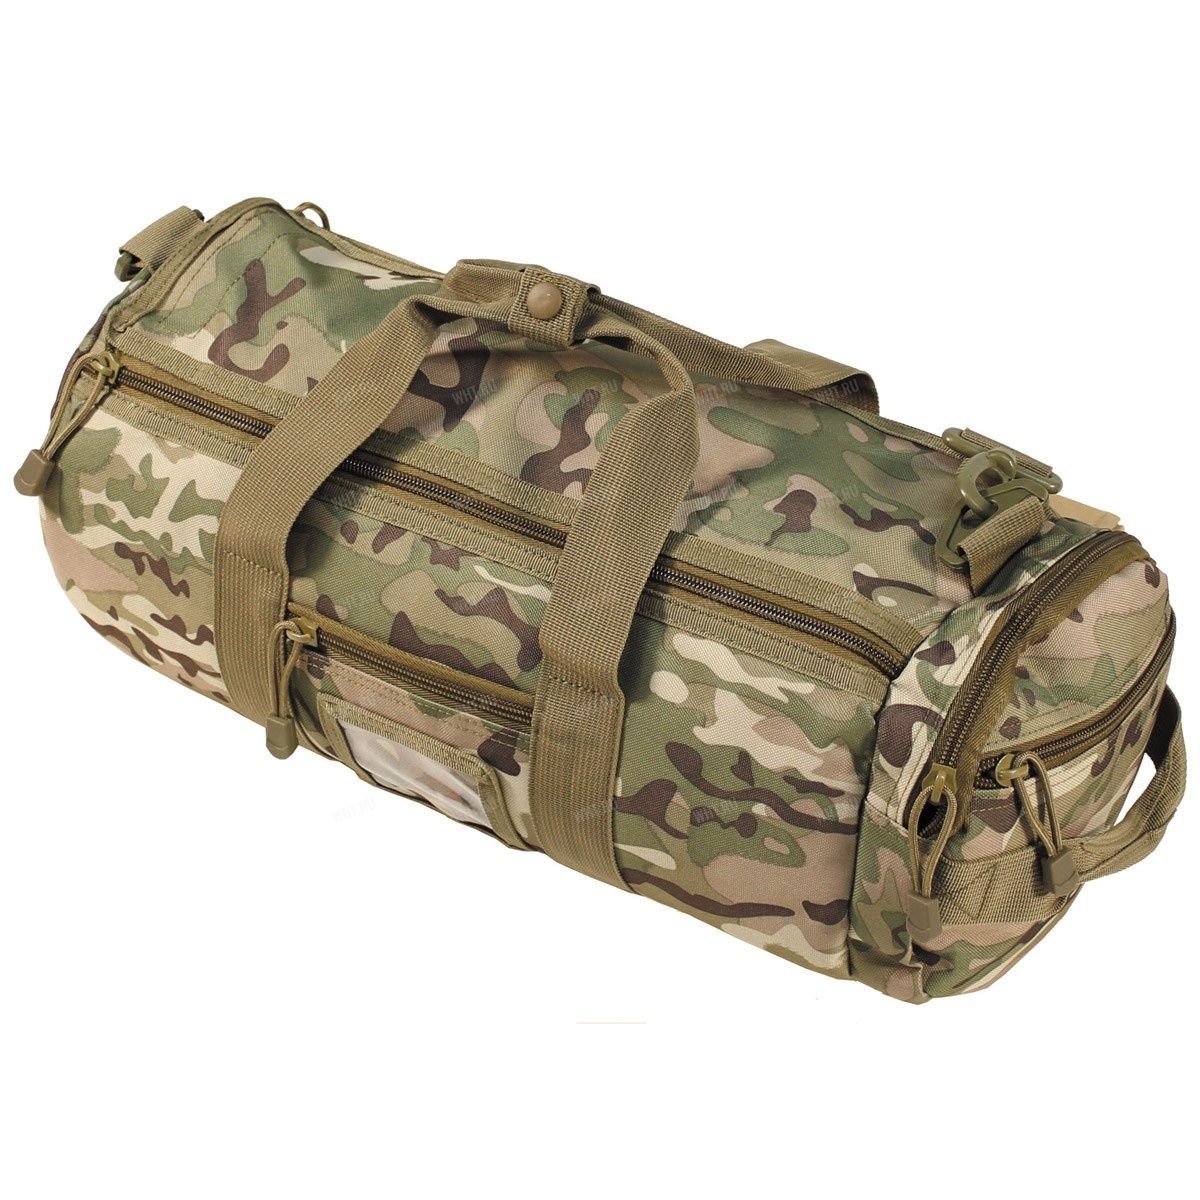 Тактическая сумка "MOLLE', цвет Operation camo купить в интернет-магазине wht.ru